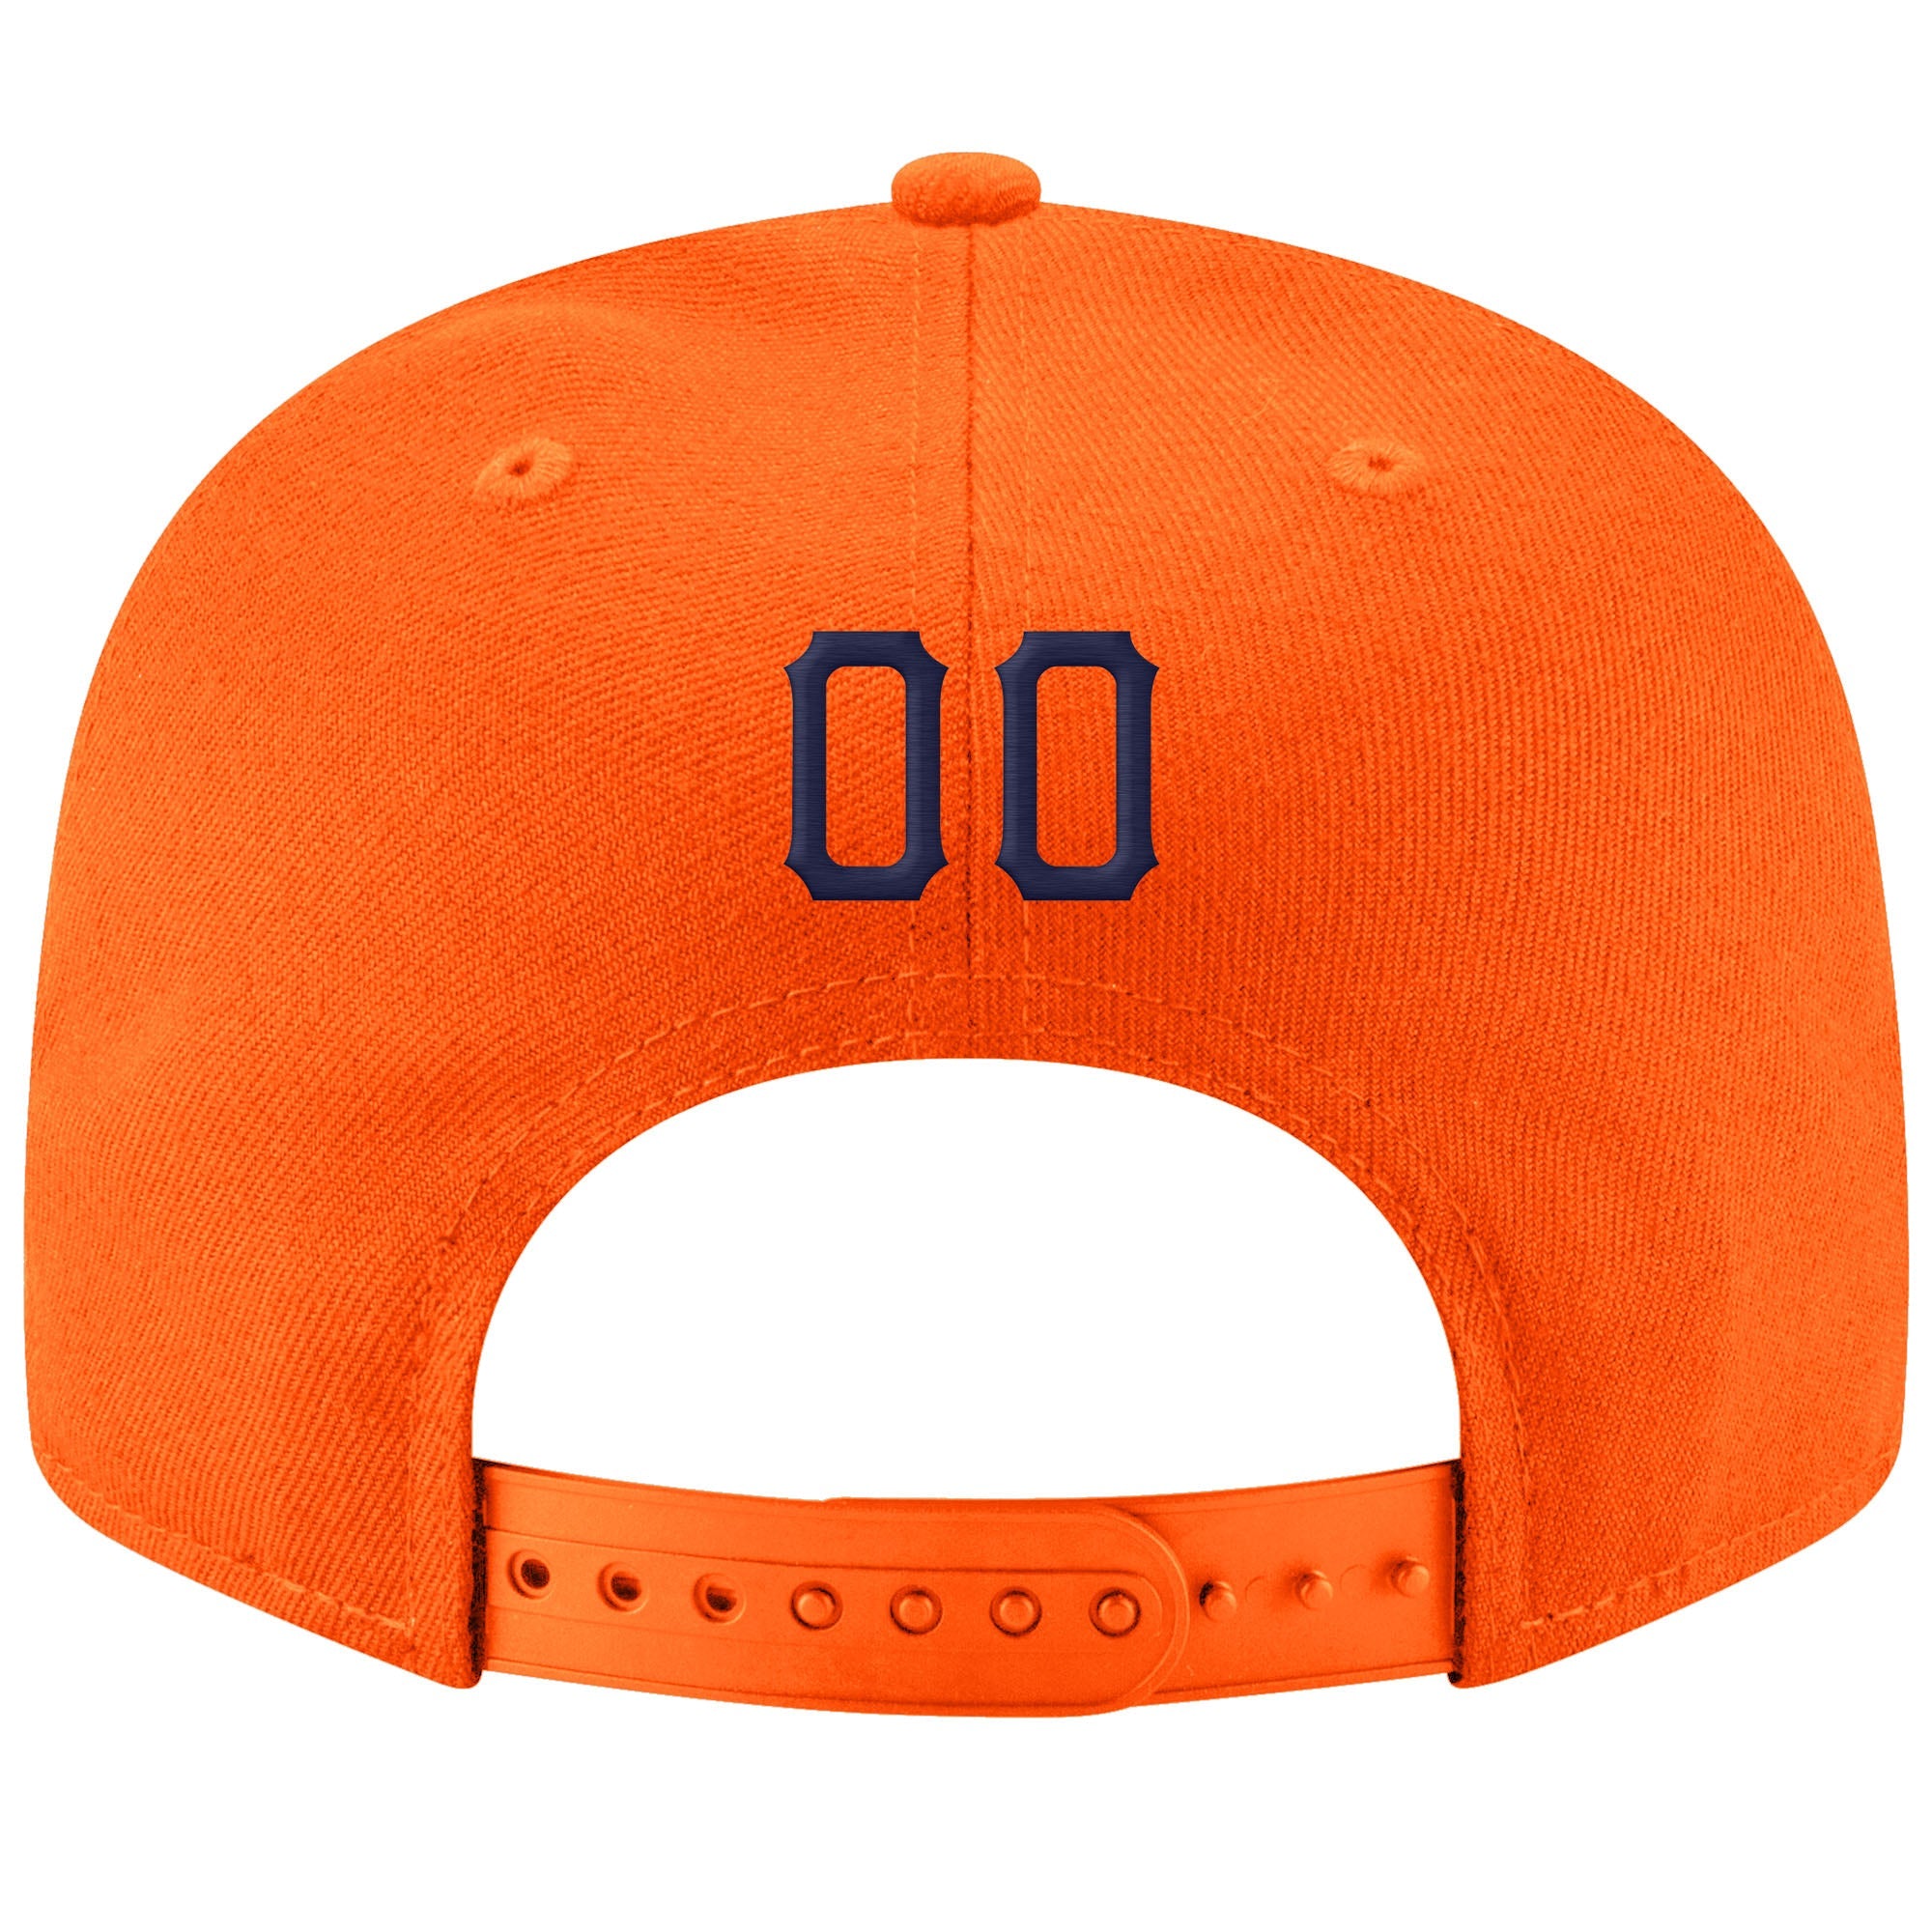 Personnalisé Orange Marine-Blanc Cousu Réglable Snapback Chapeau